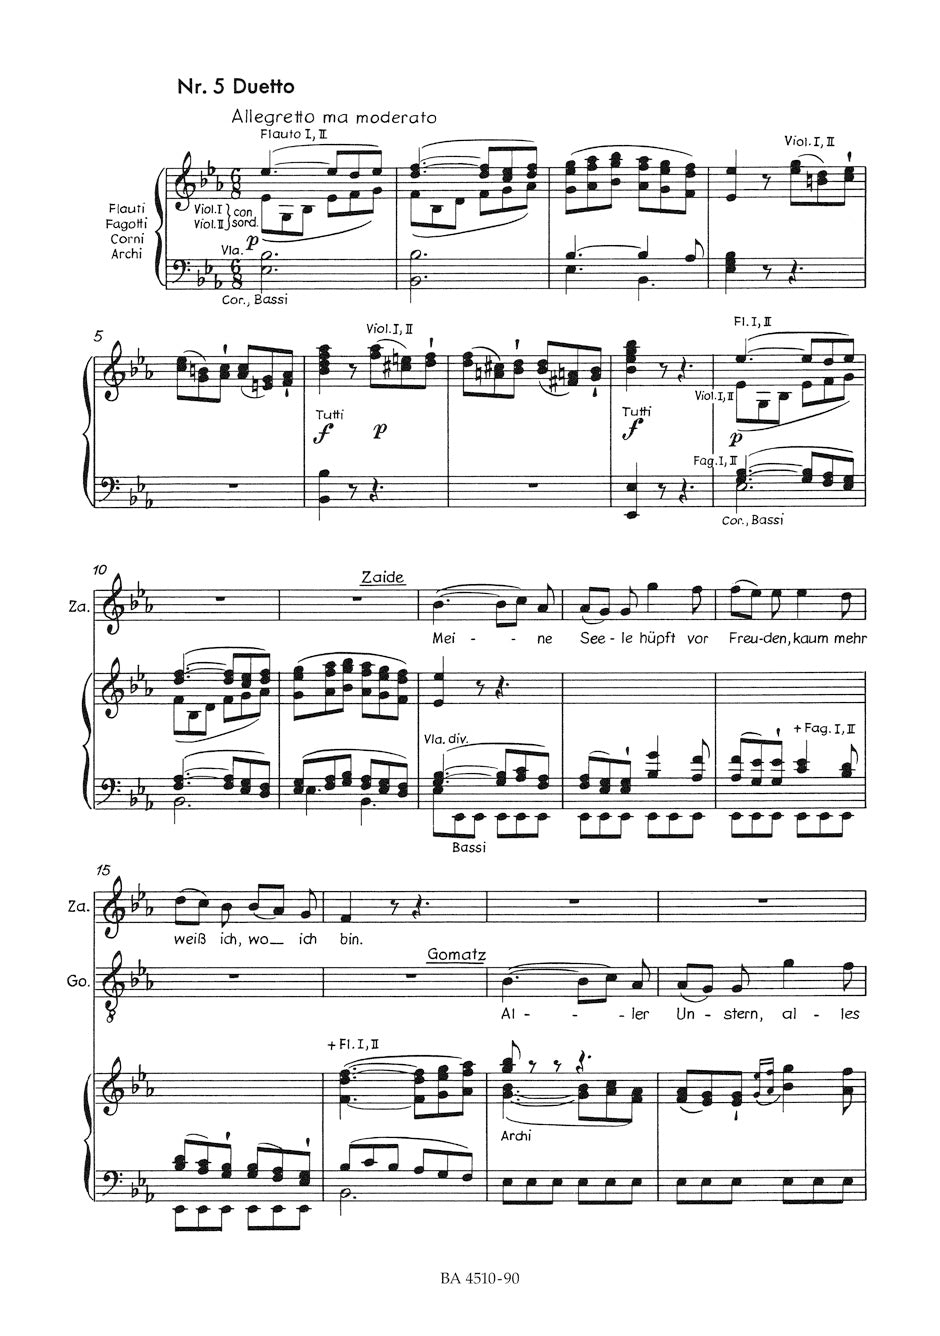 Mozart: Zaide, K. 344 (336b)